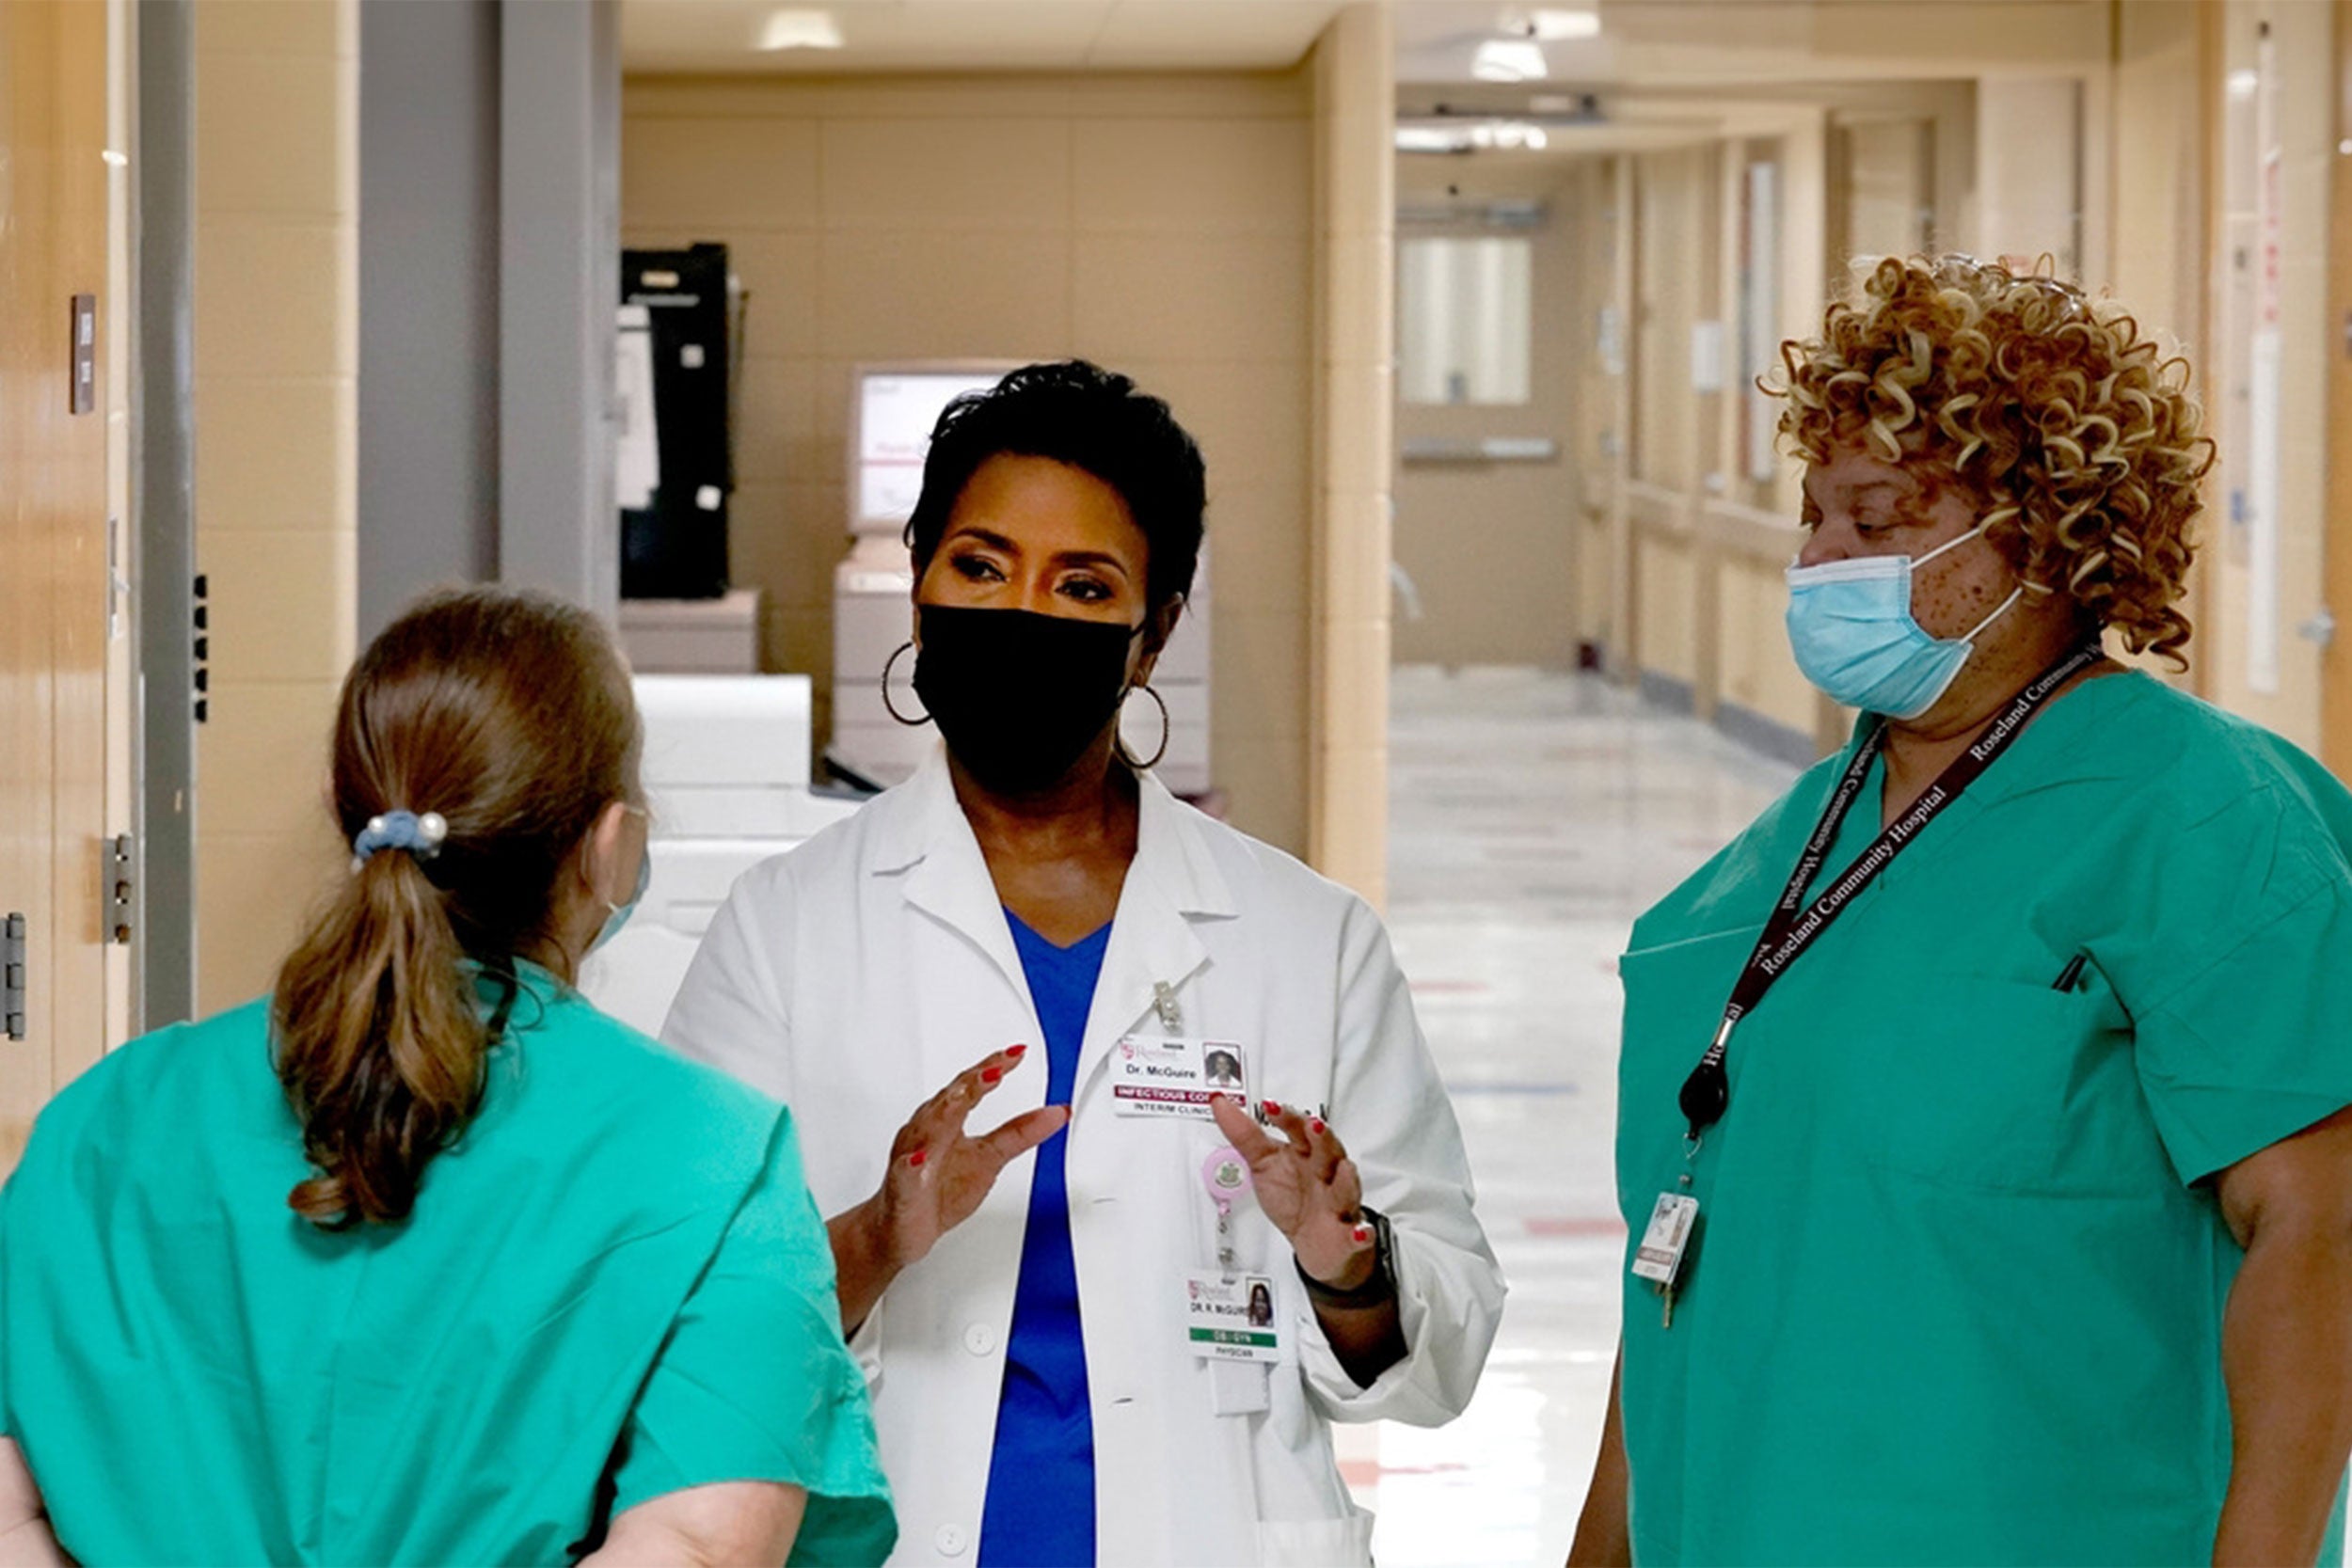 Doctors meeting in a hallway.